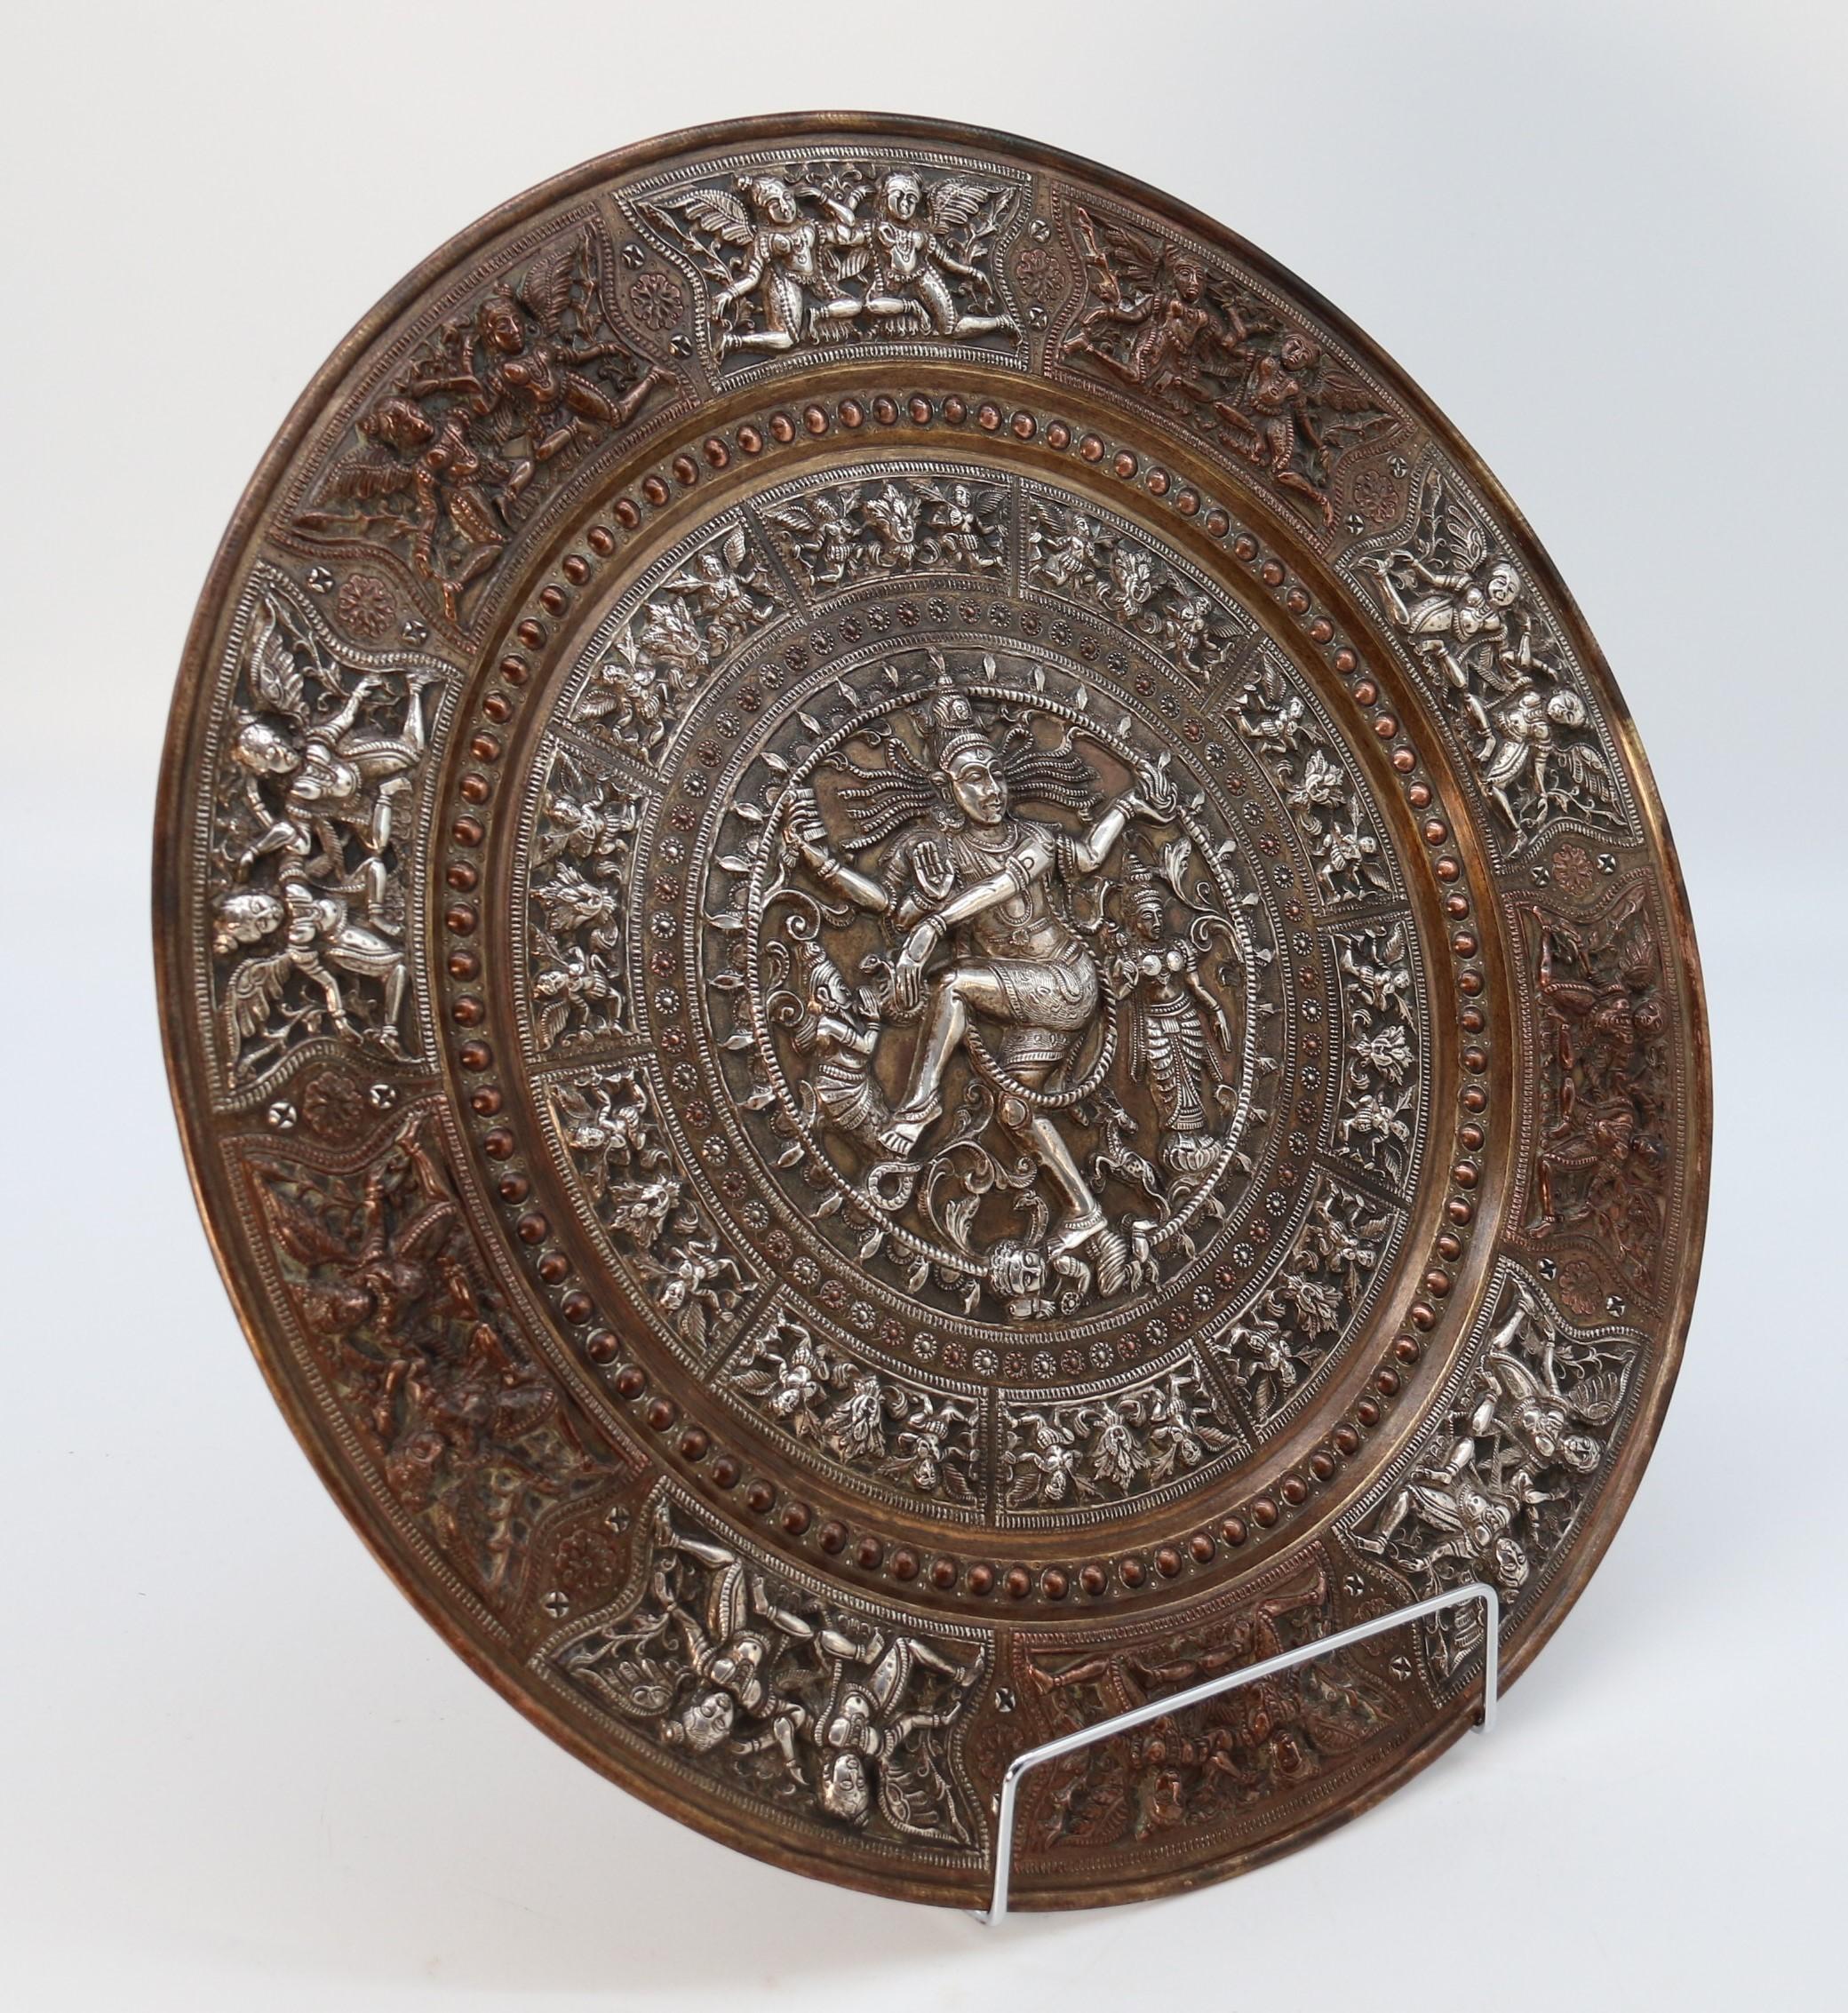 
Ce chargeur de très belle qualité datant de la fin du XIXe siècle et de la période Raj est fabriqué en laiton de forte épaisseur. Il est abondamment décoré à la main de panneaux radiaux exceptionnellement fins travaillés en feuilles d'argent et de